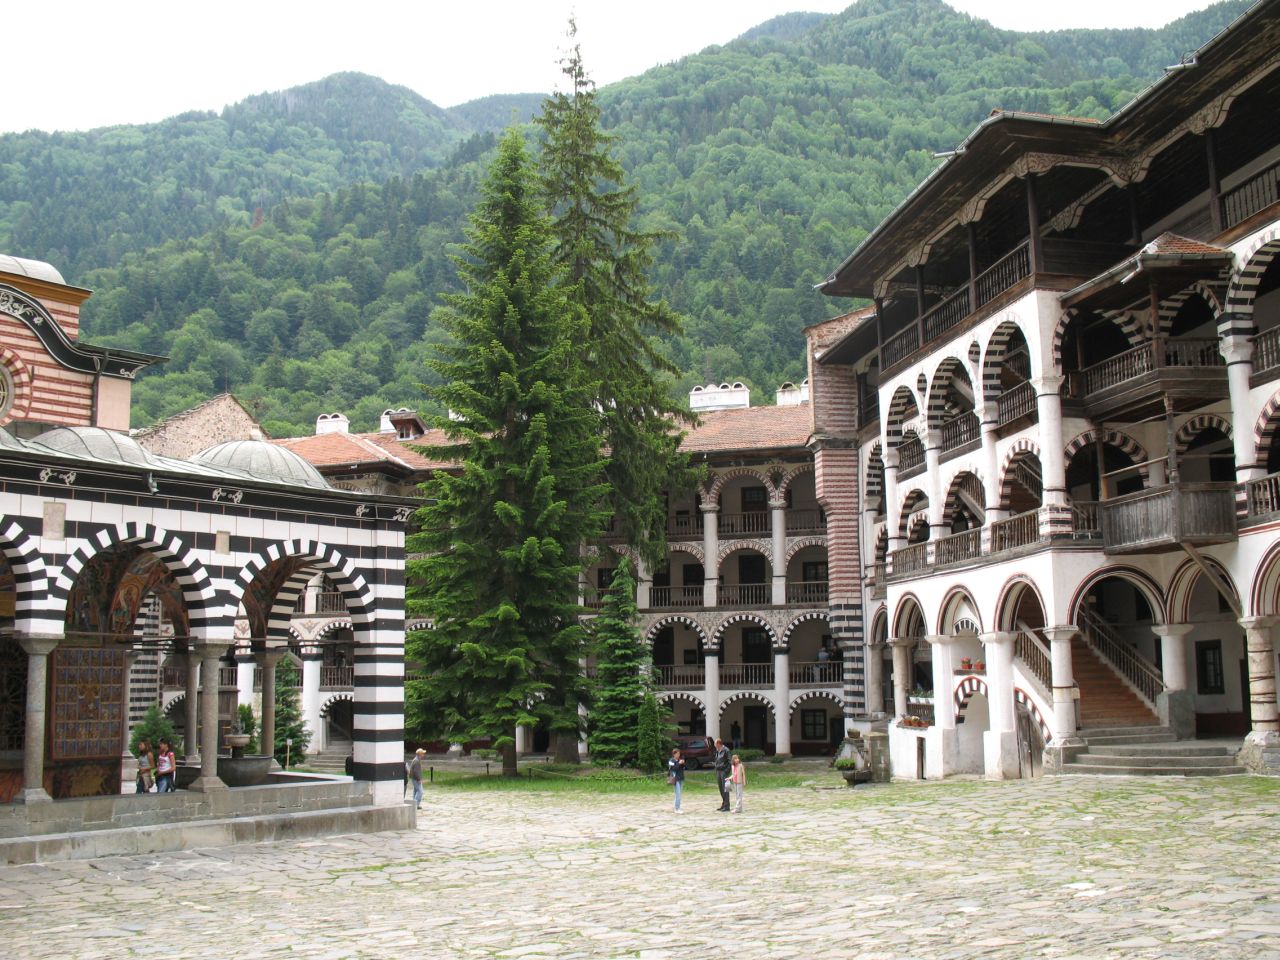 Rila monastery - Monastre de Rila